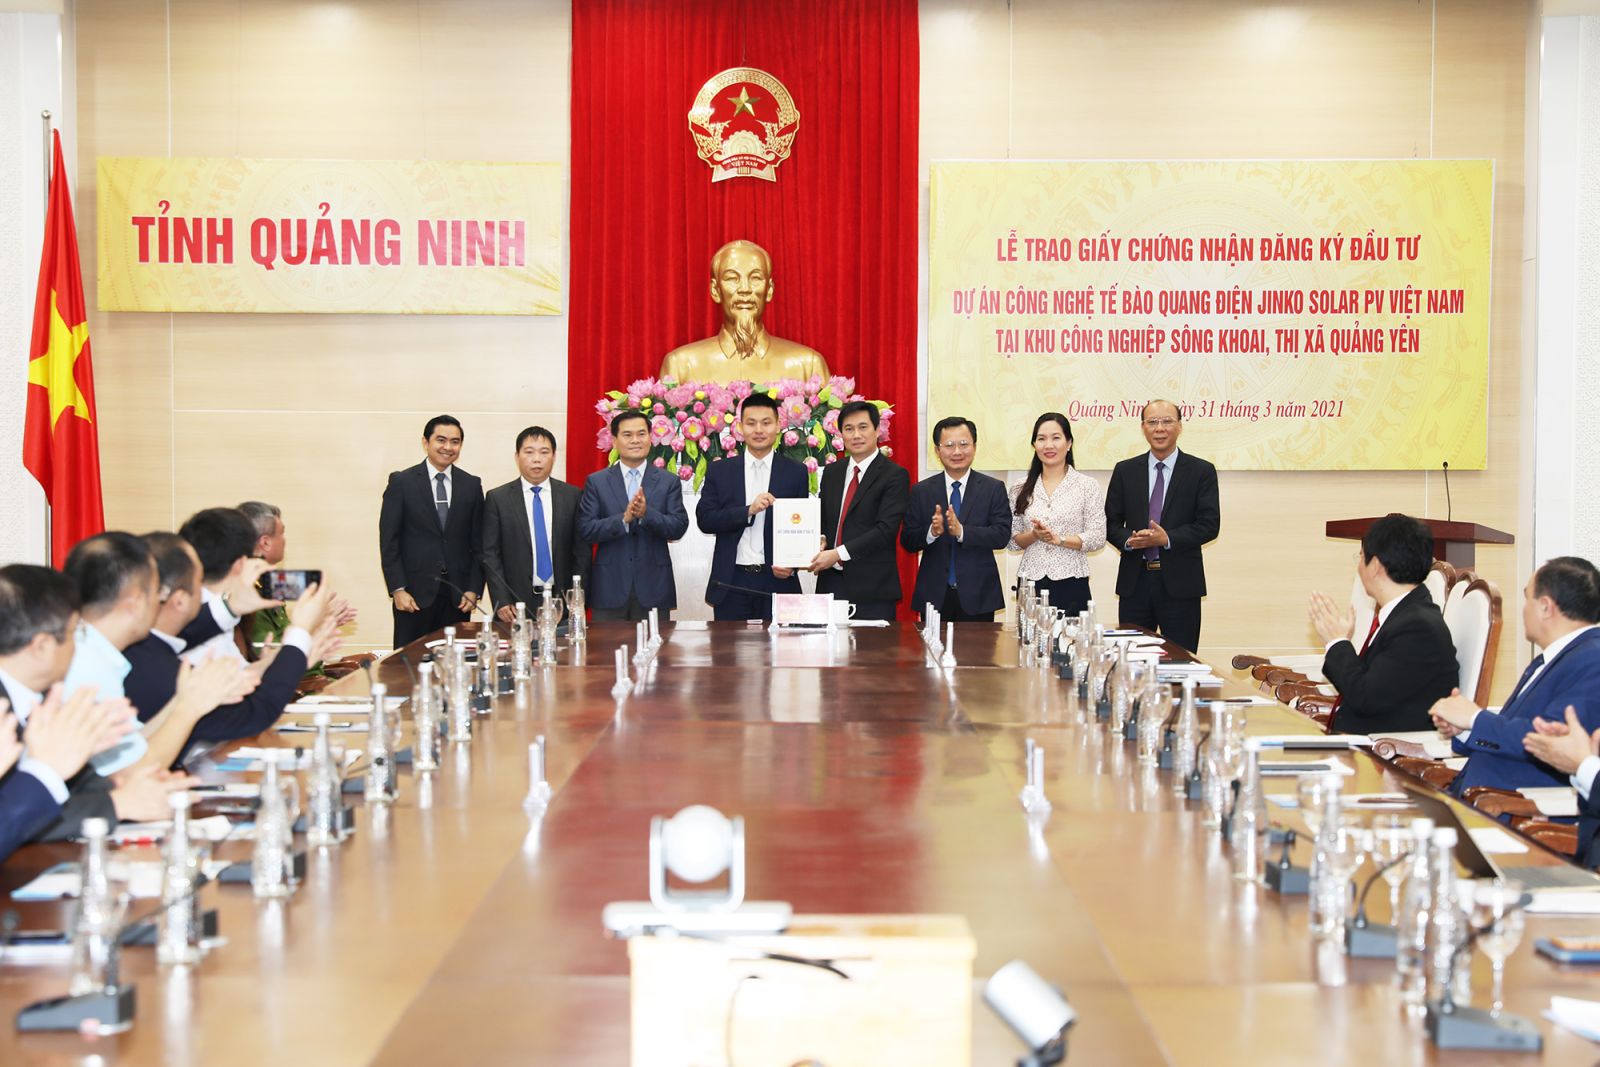 Ông Nguyễn Tường Văn, Chủ tịch UBND tỉnh Quảng Ninh trao Giấy CNĐKĐT cho đại diện Công ty Jinko Solar Hong Kong